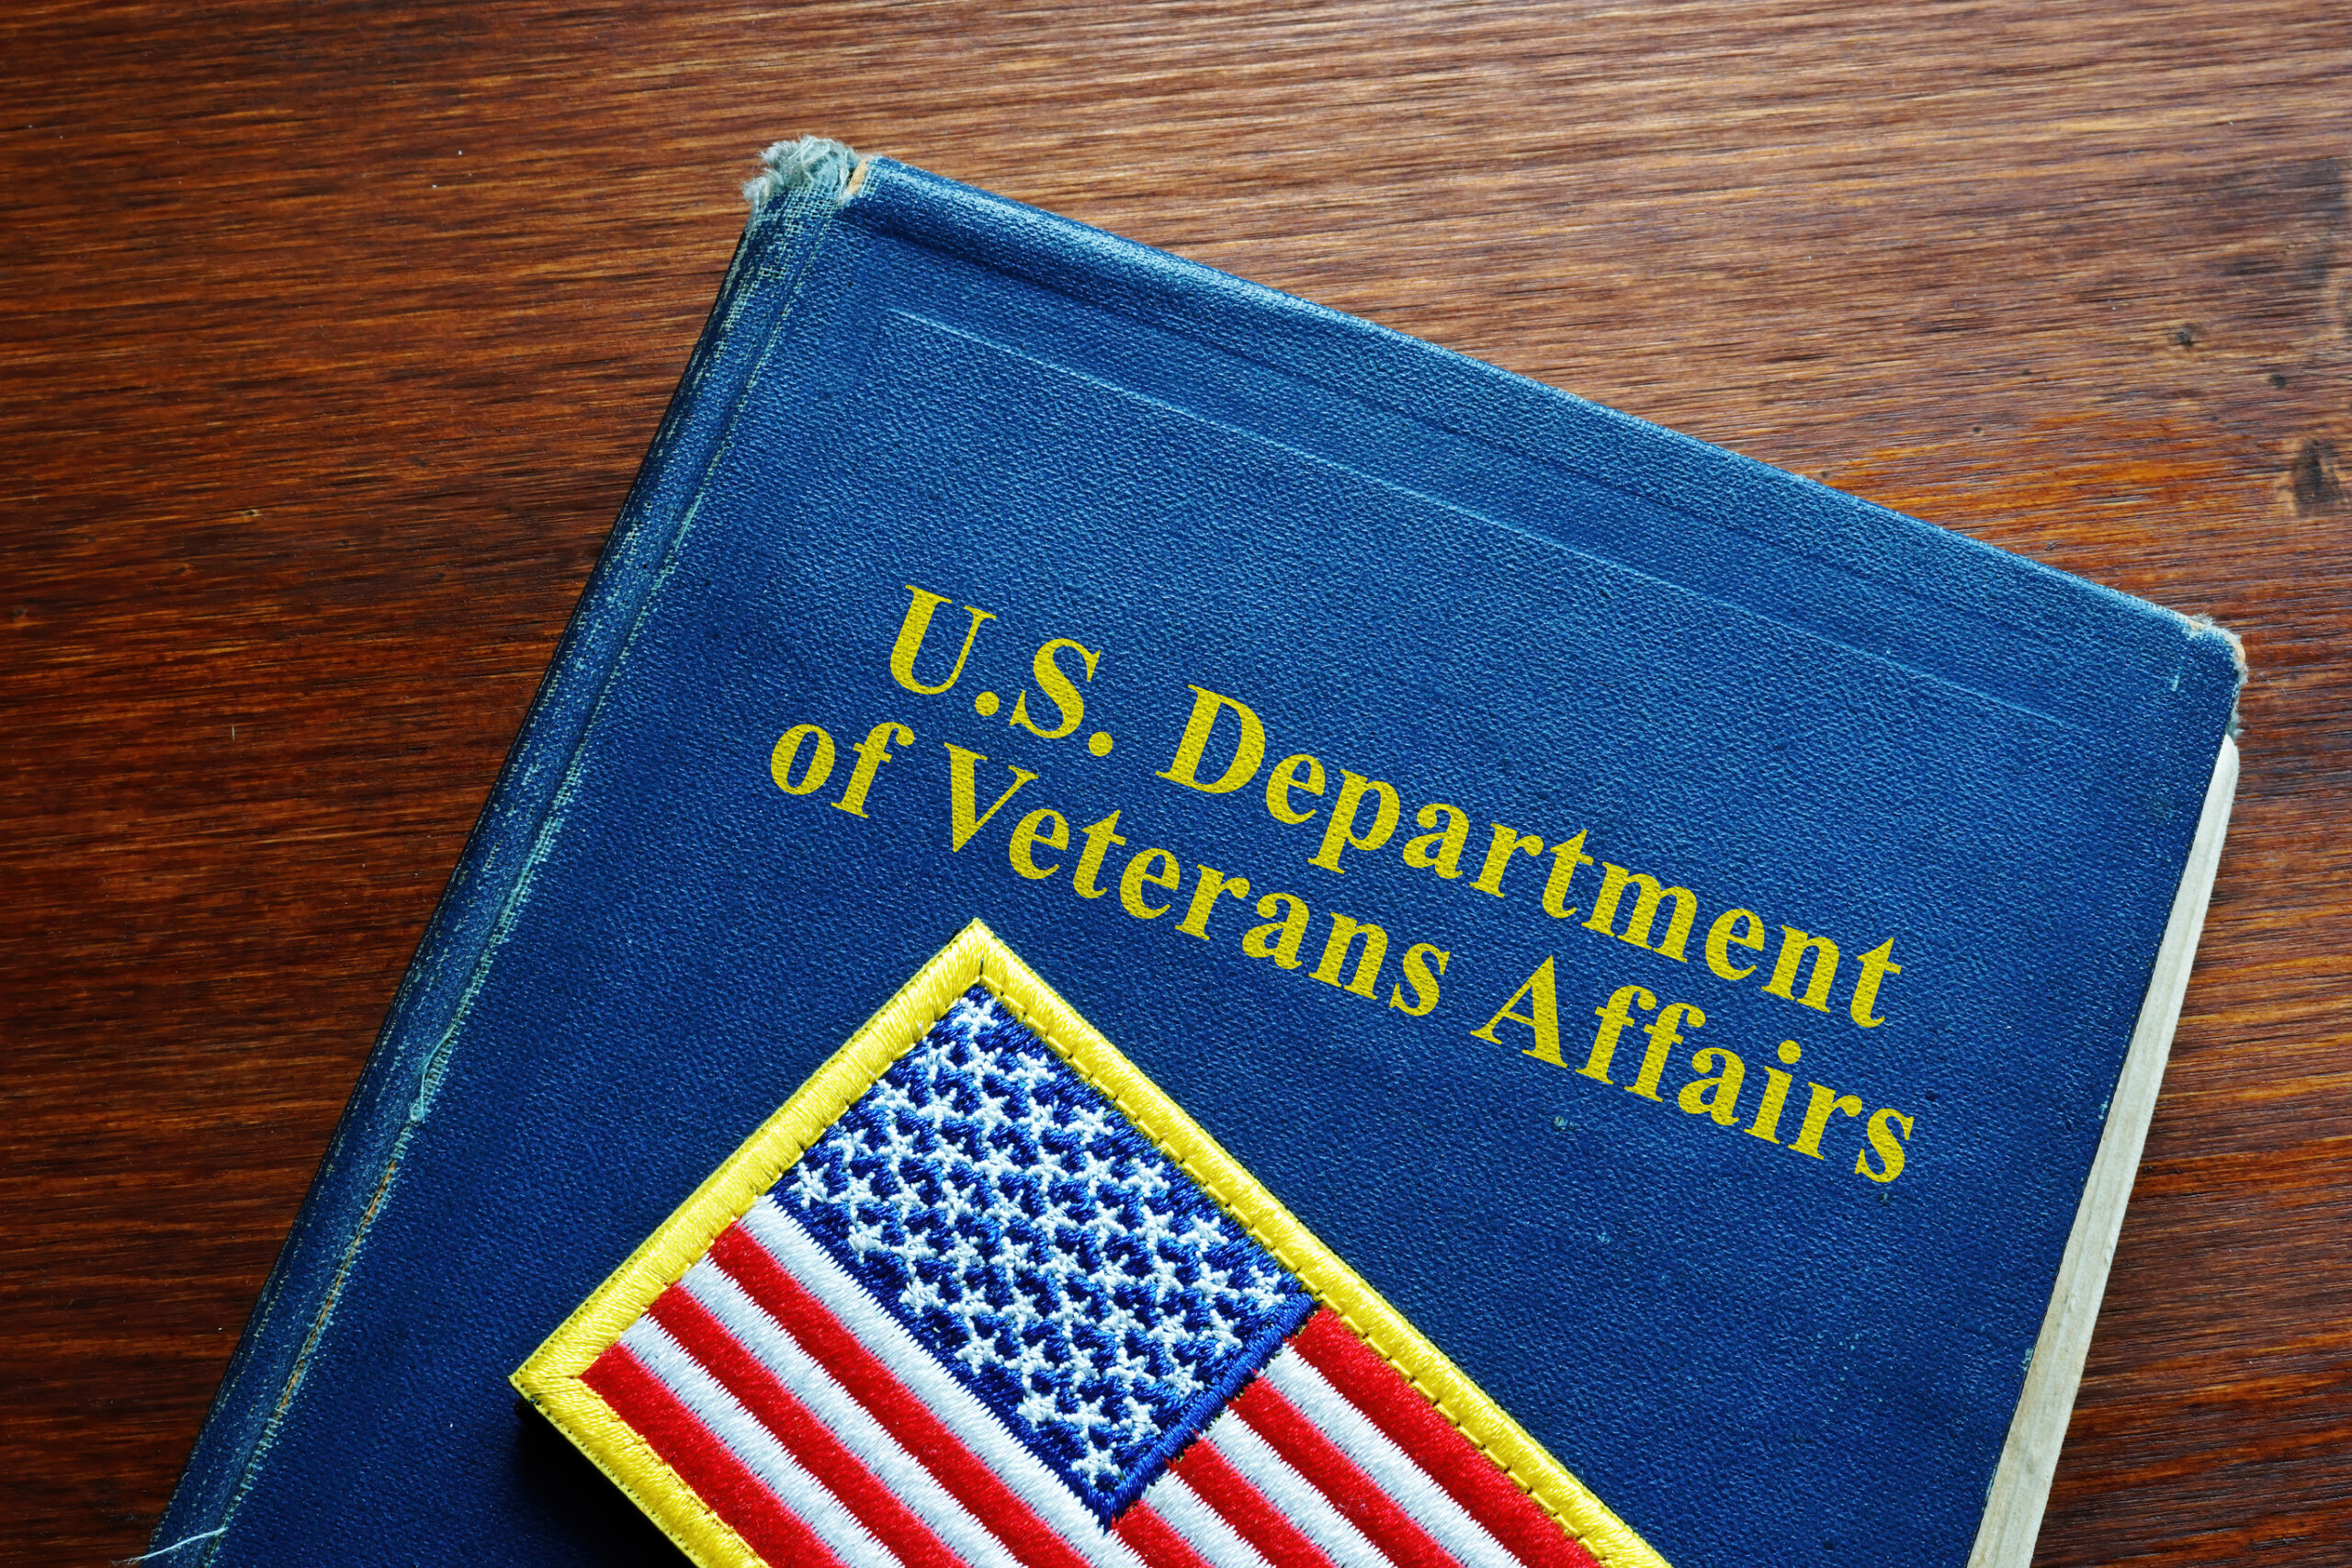 veterans affairs book